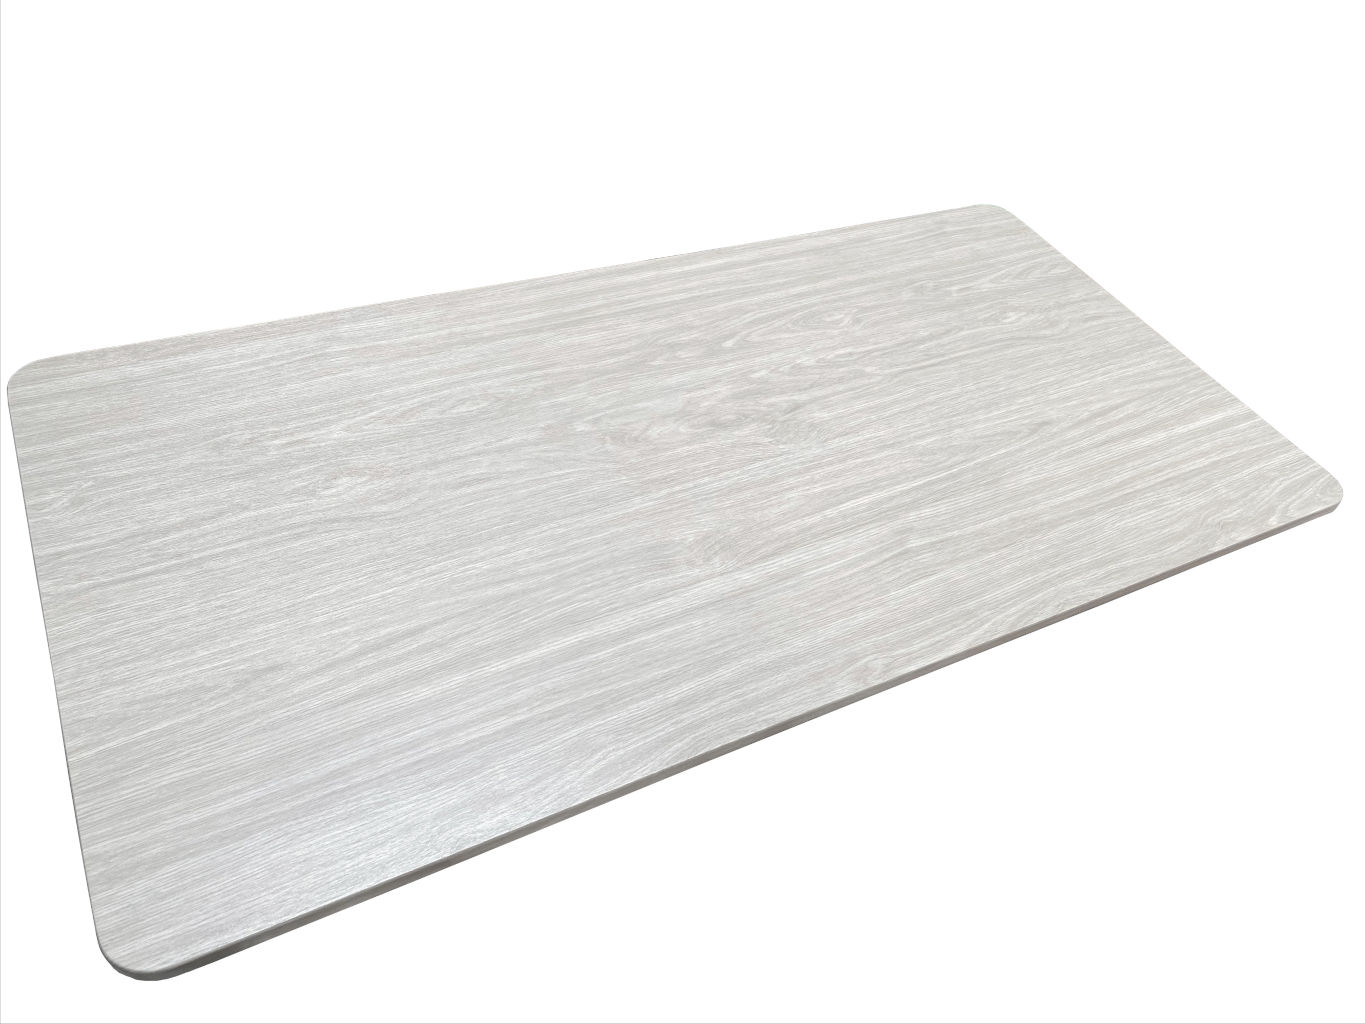 Tischplatten Verbundholz 1600 mm 800 mm 17 mm stark weiße Eiche (1 Stück)